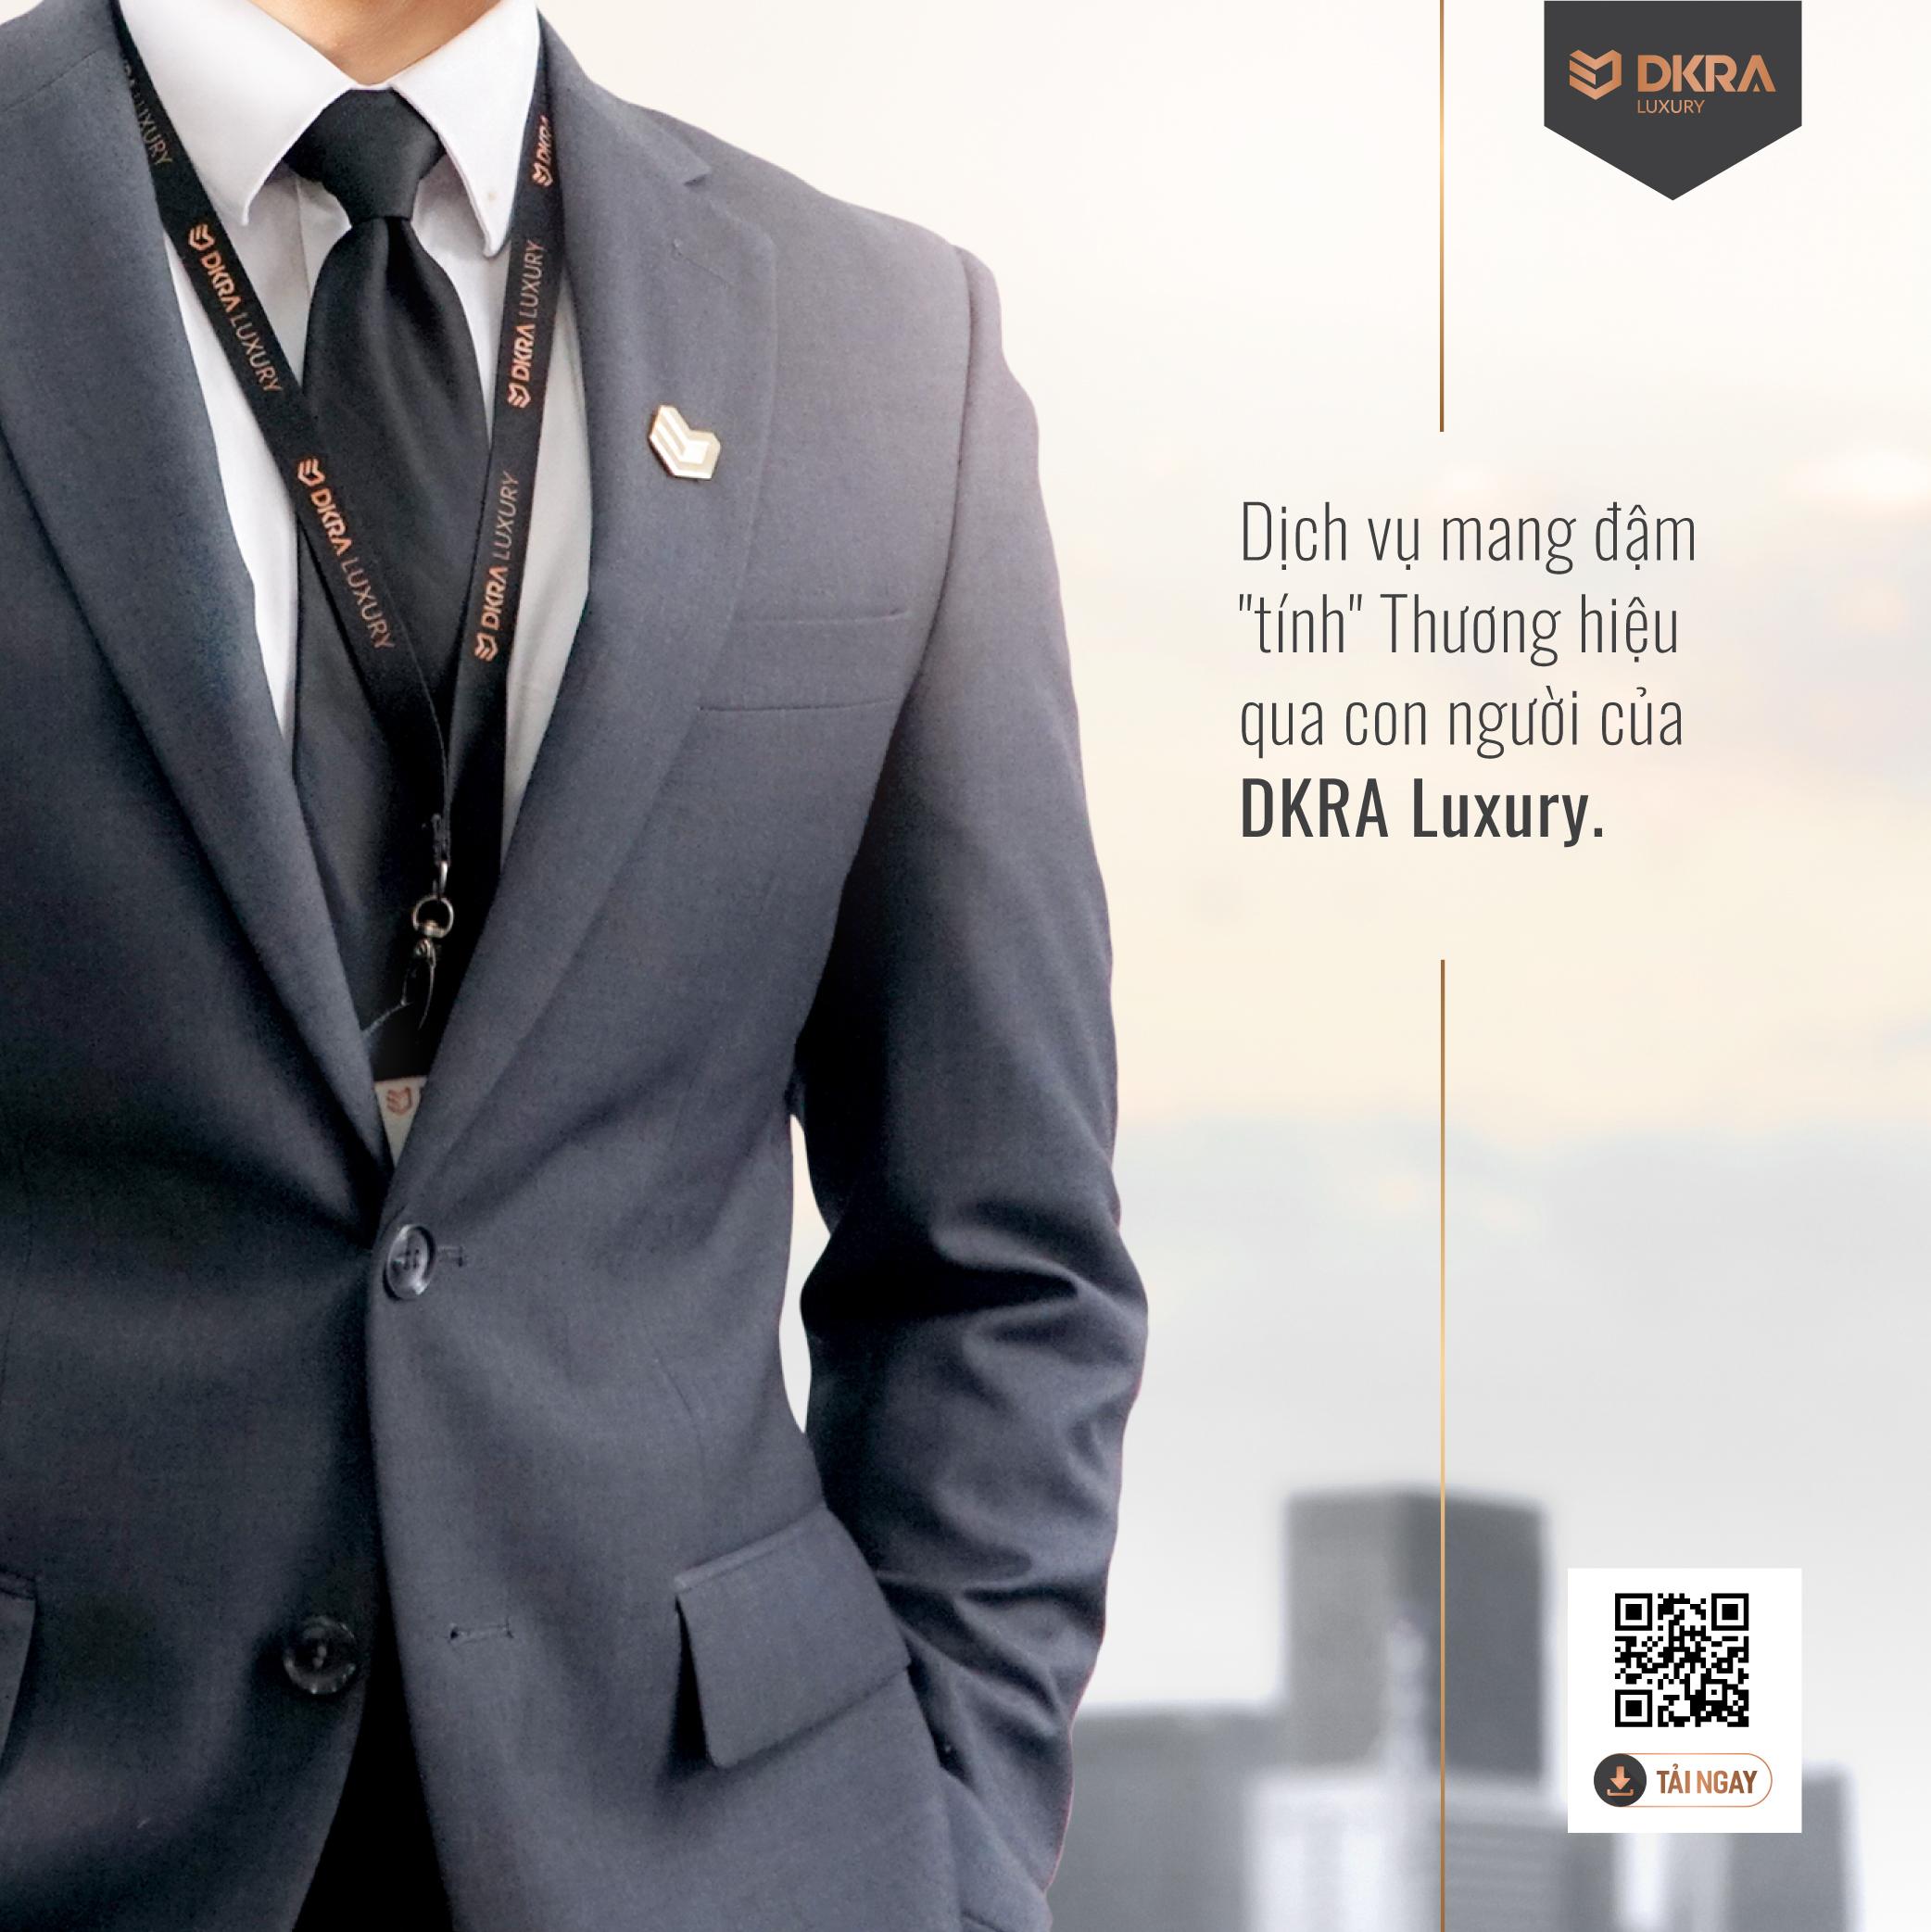 Dịch vụ mang đậm "tính" thương hiệu qua con người của DKRA Luxury